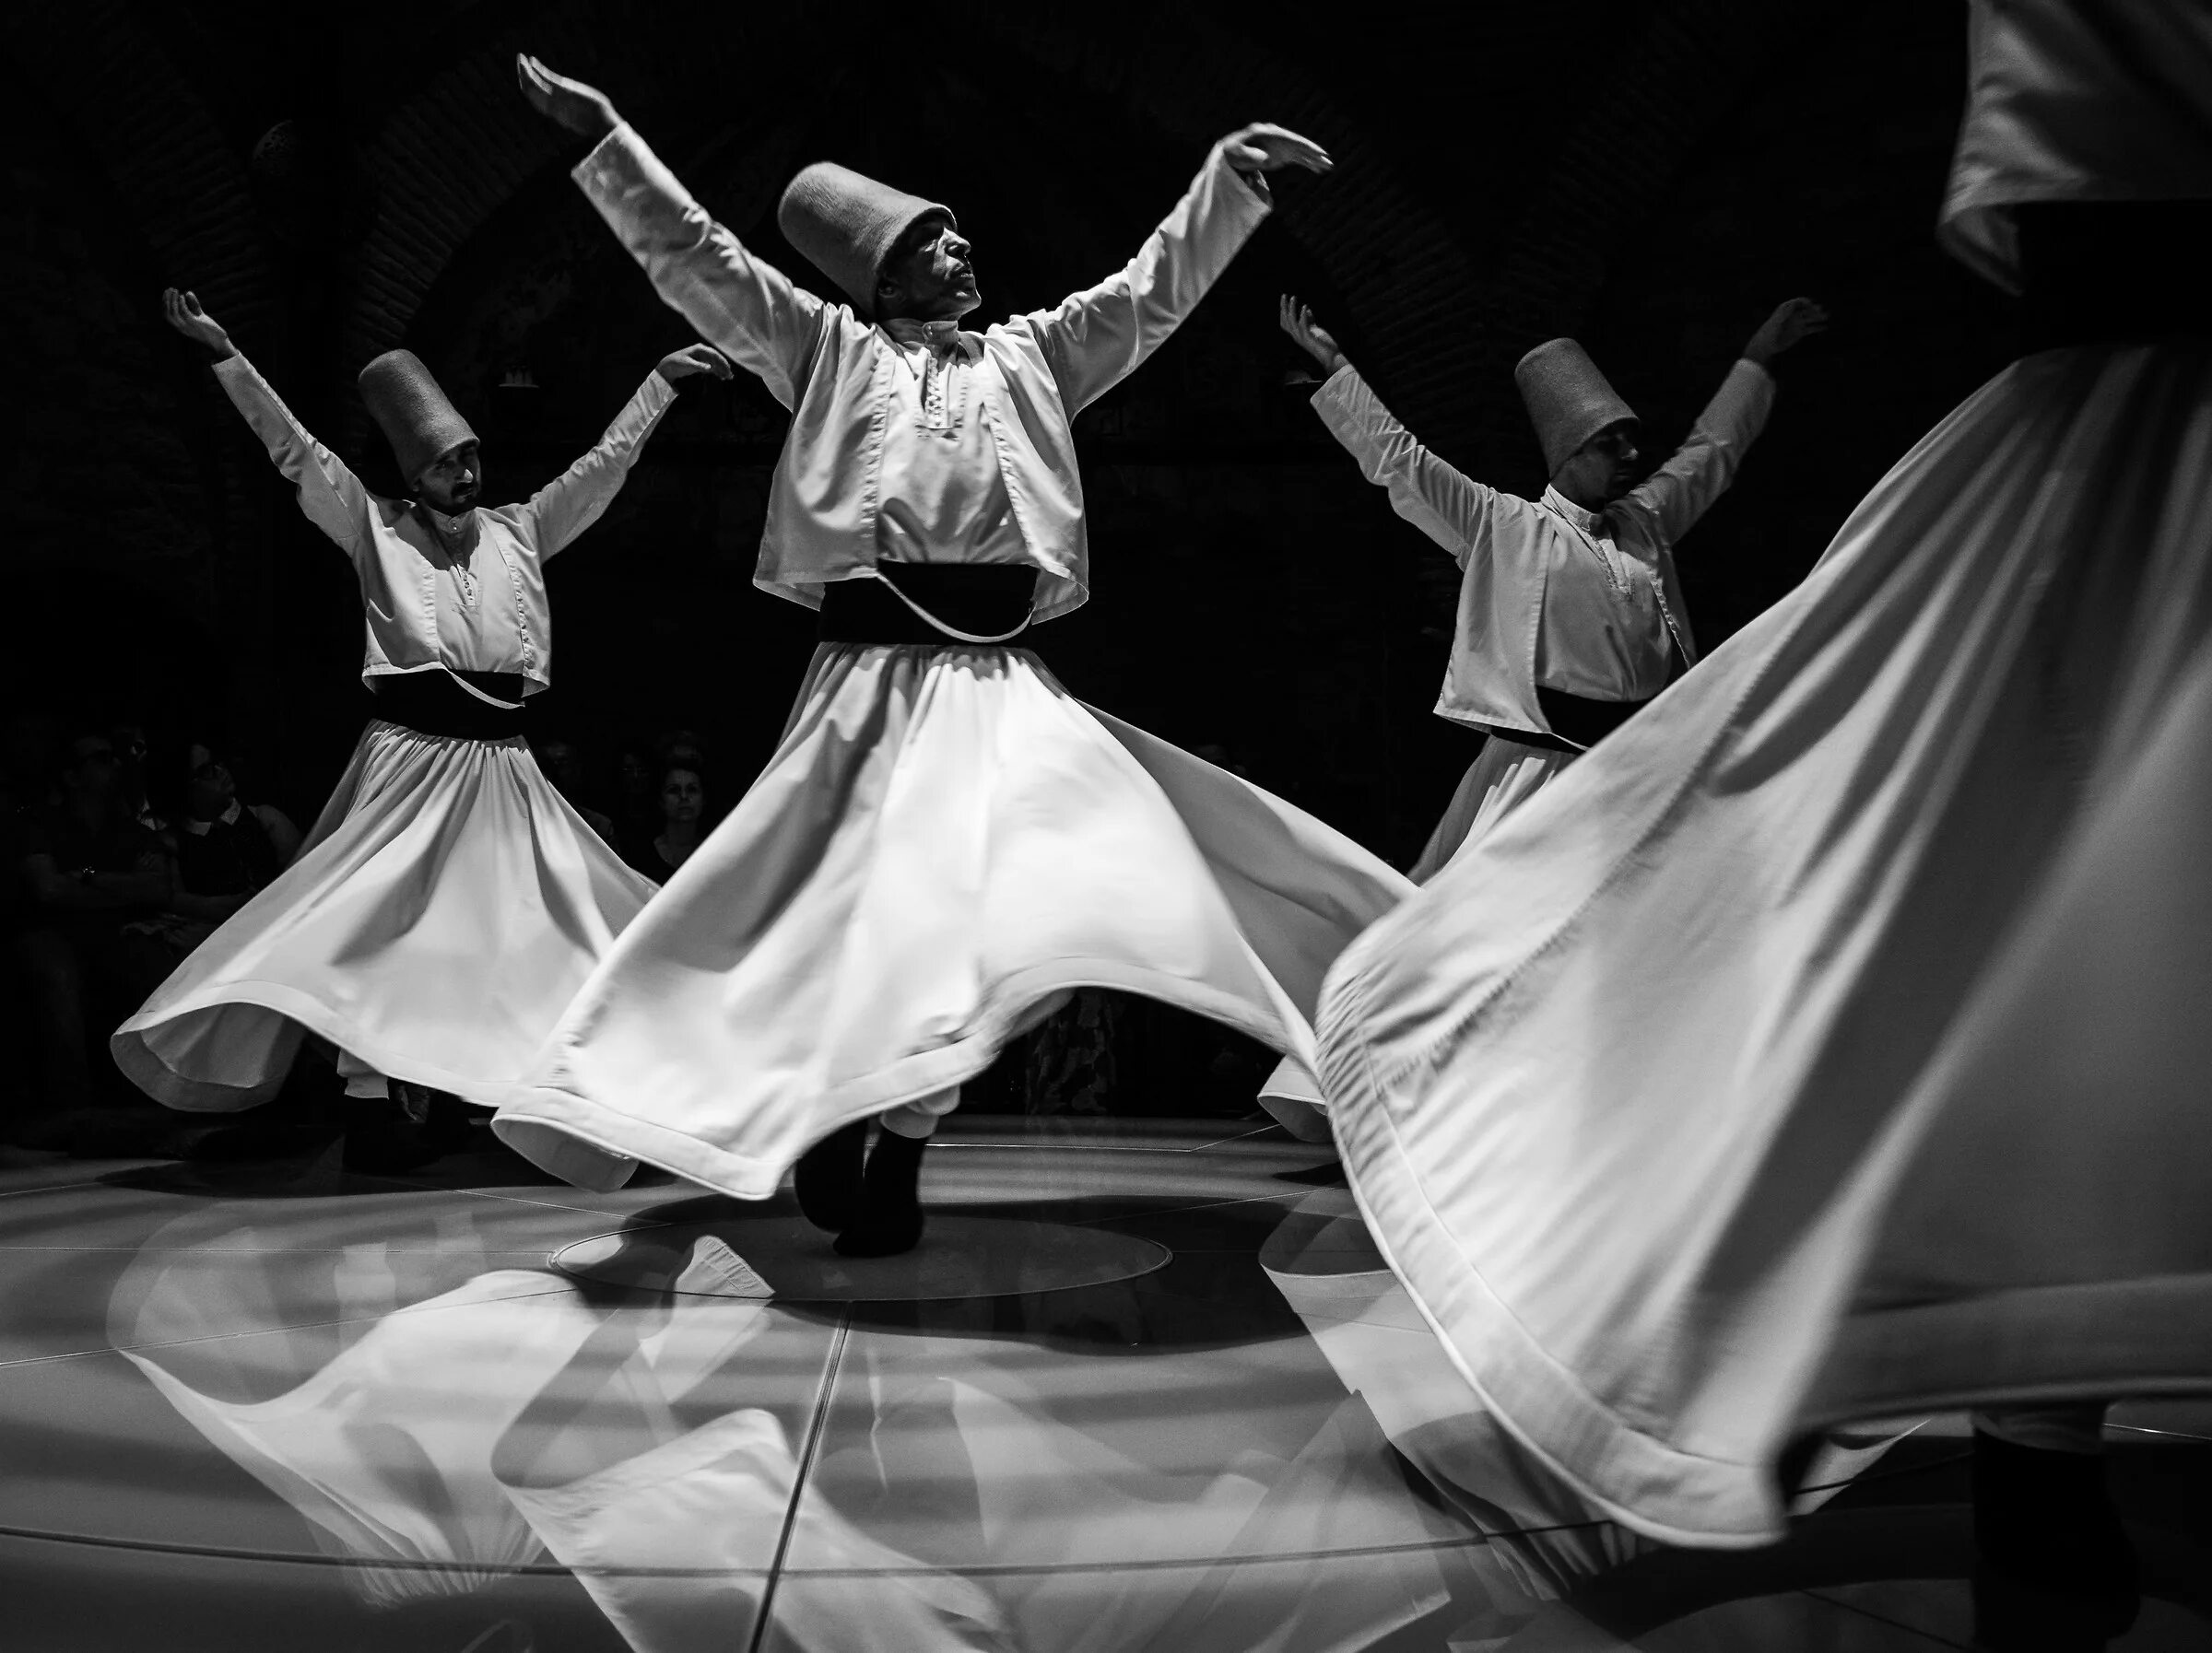 Грузинский мужской танец с платками. Танец суфийских дервишей. Танец суфиев дервишей. Дервиши Персии. Турецкий народный танец дервишей.